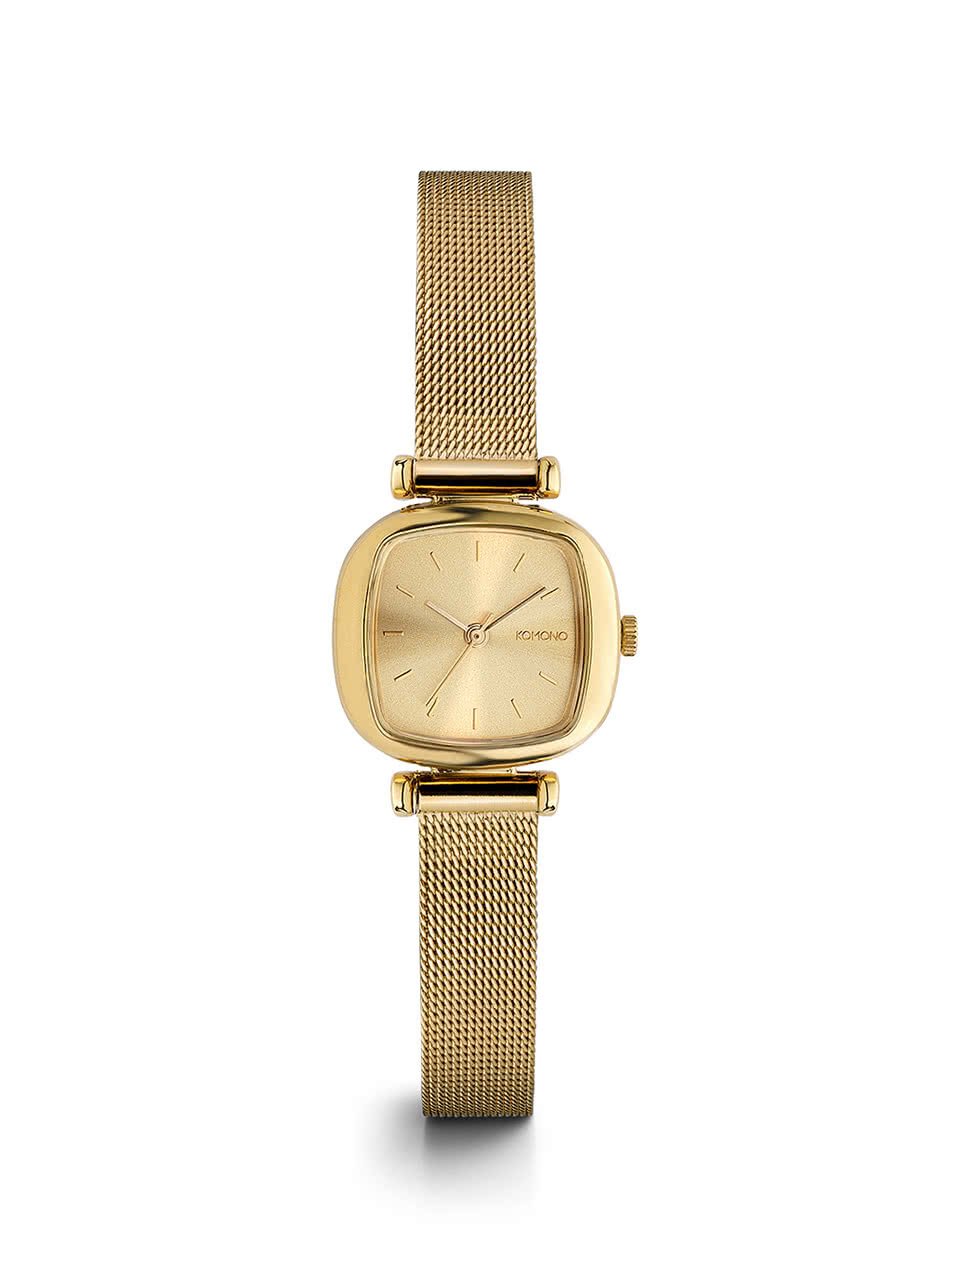 Dámské hodinky ve zlaté barvě s nerezovým páskem Komono Moneypenny Royale